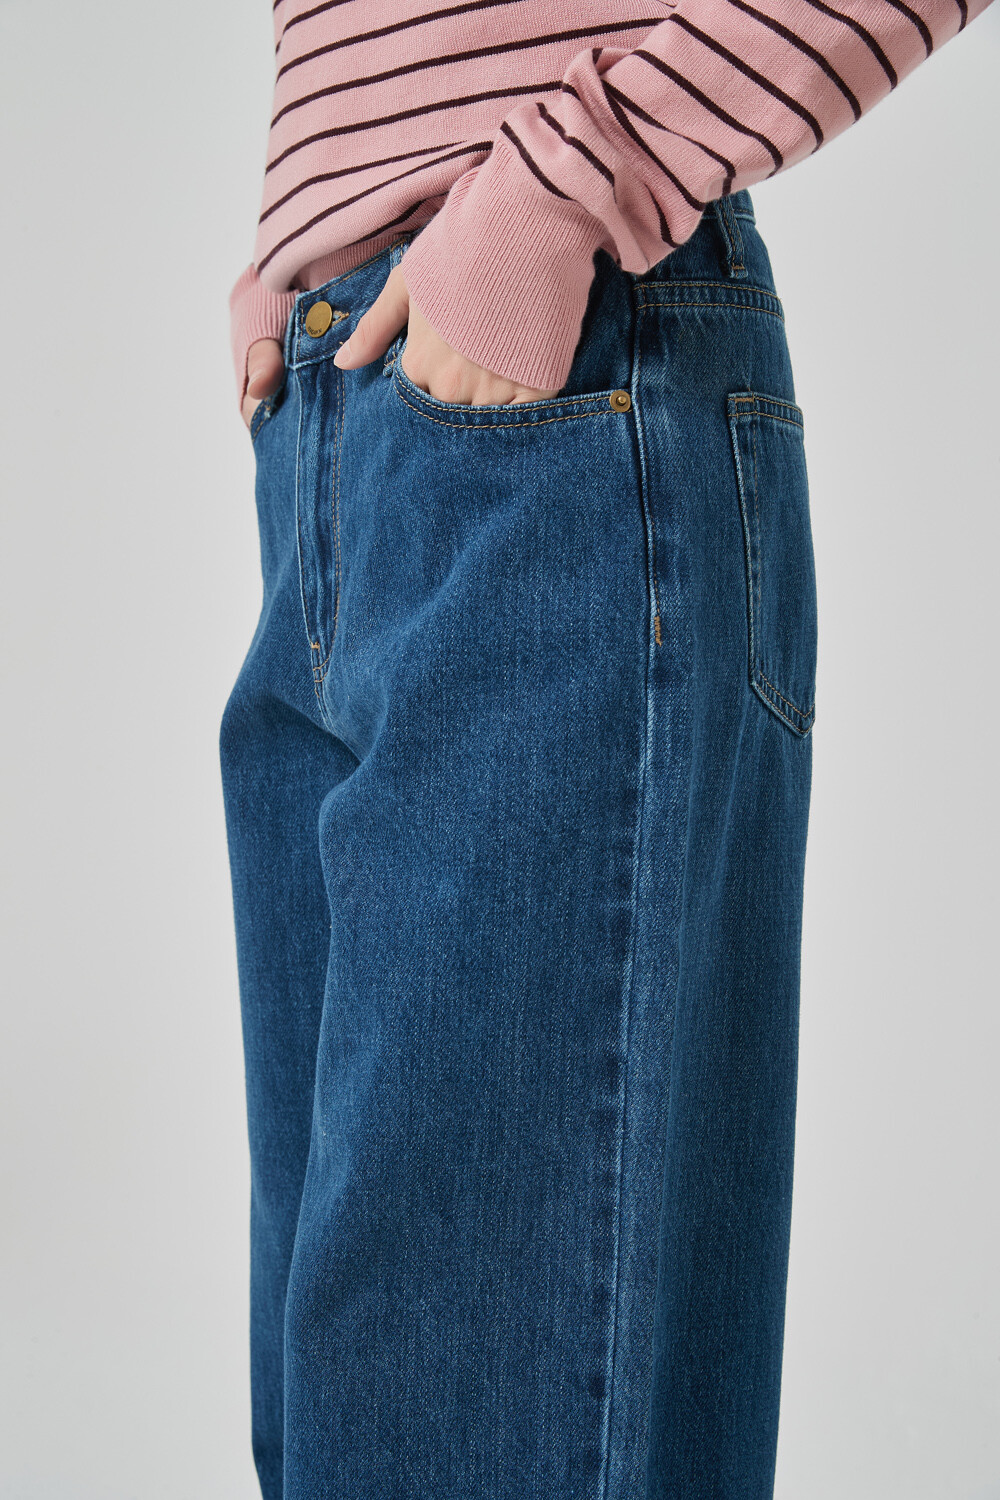 Pantalon Cotily Azul Medio